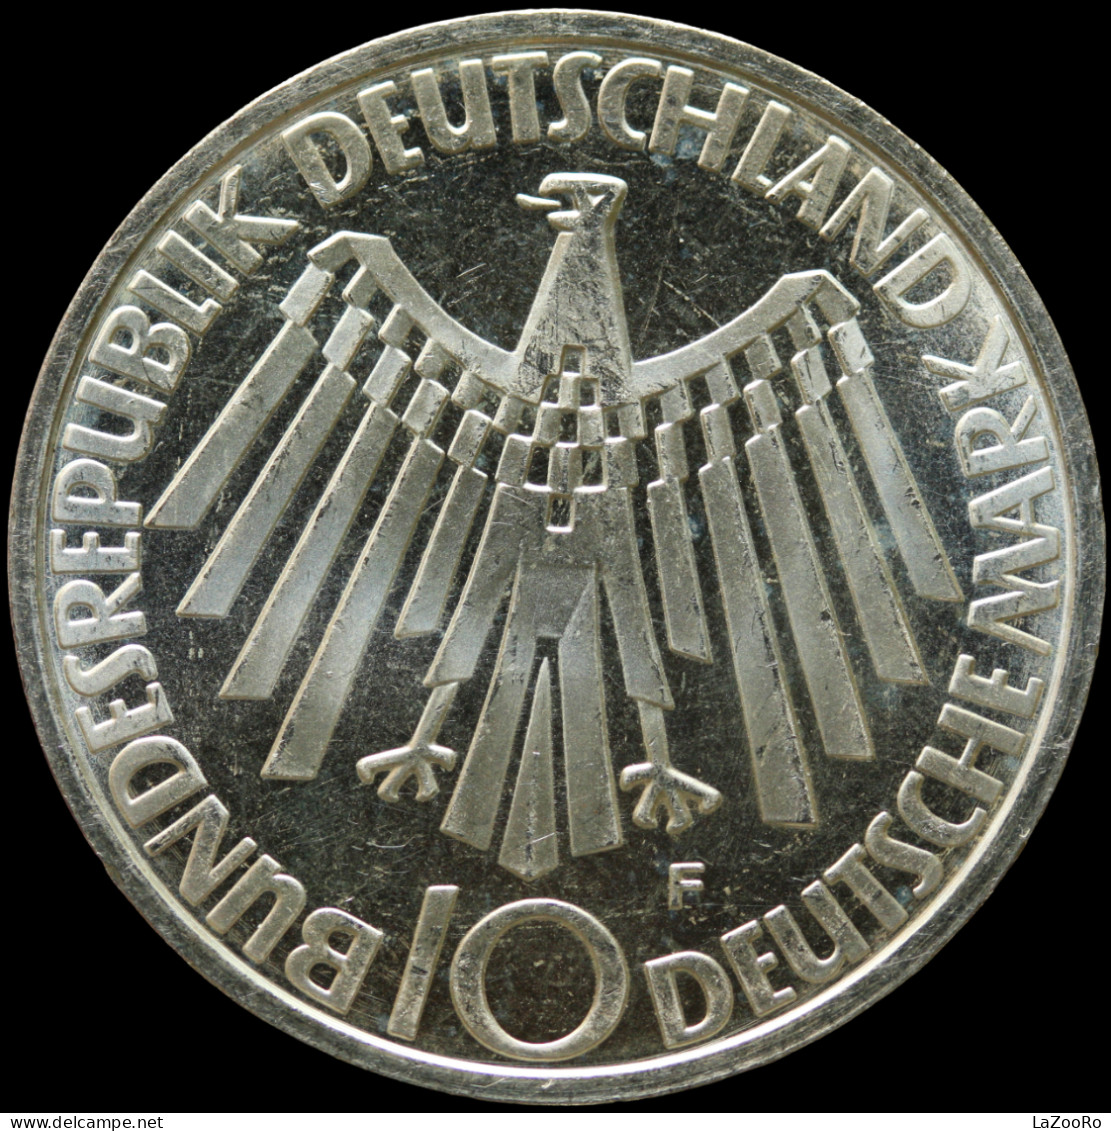 LaZooRo: Germany 10 Mark 1972 F PROOF Olympics - Silver - Conmemorativas